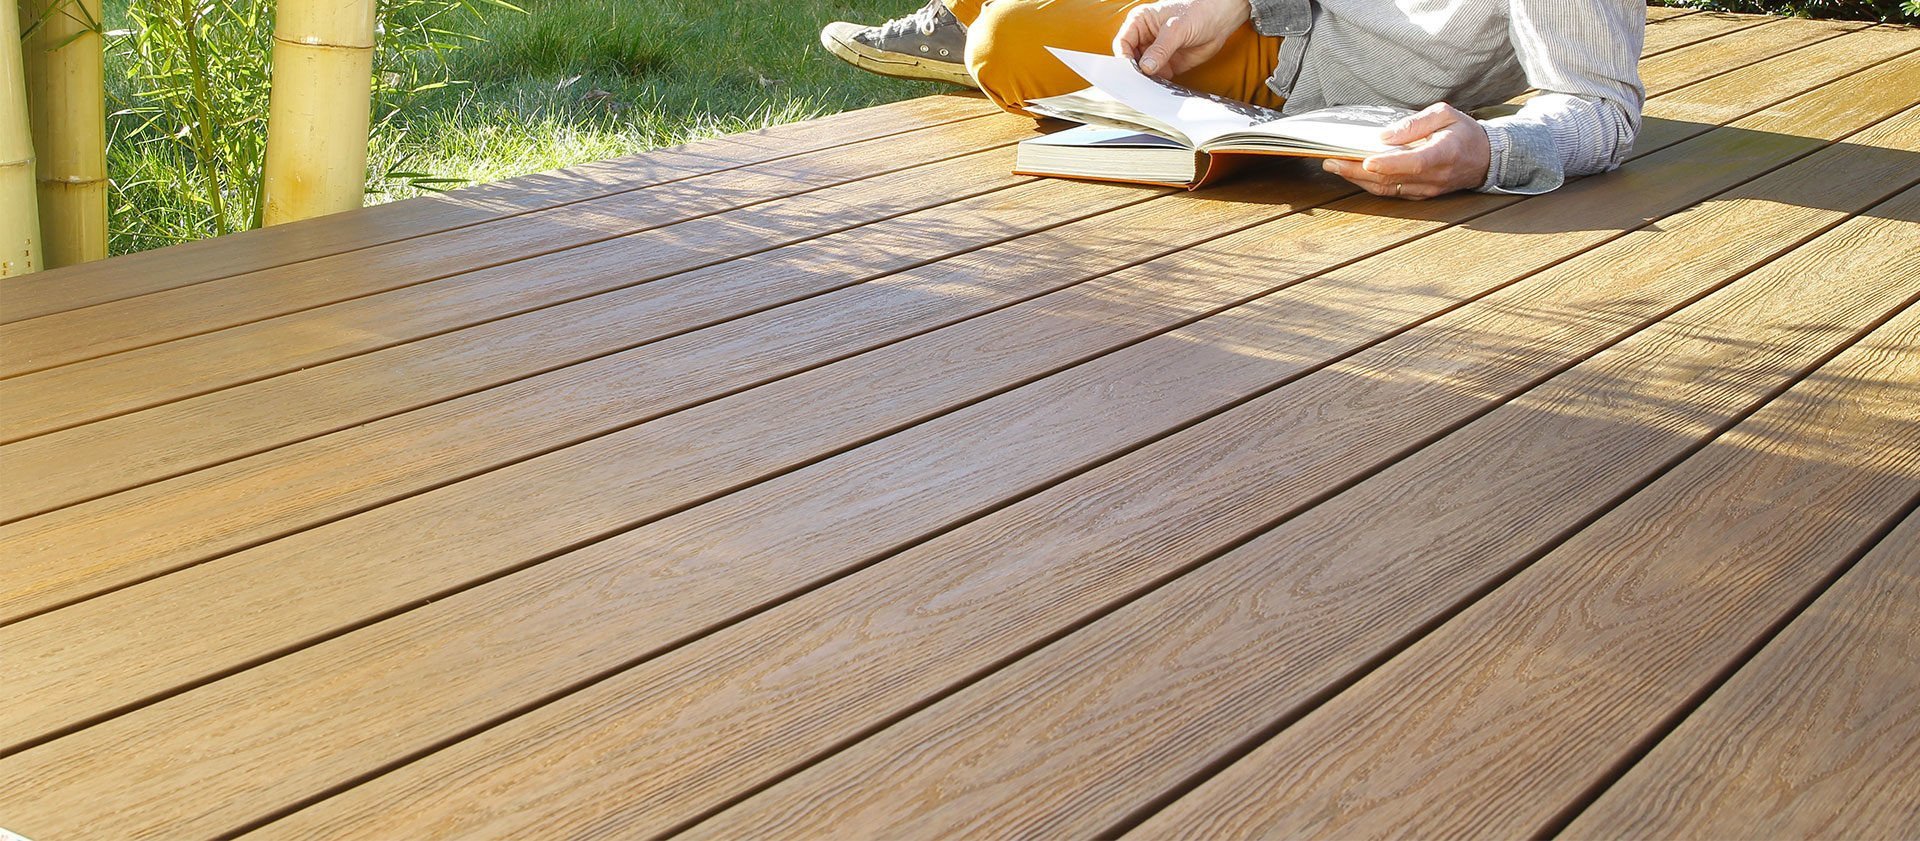 Lasure decking protection pour planchers et sol en bois teck mat